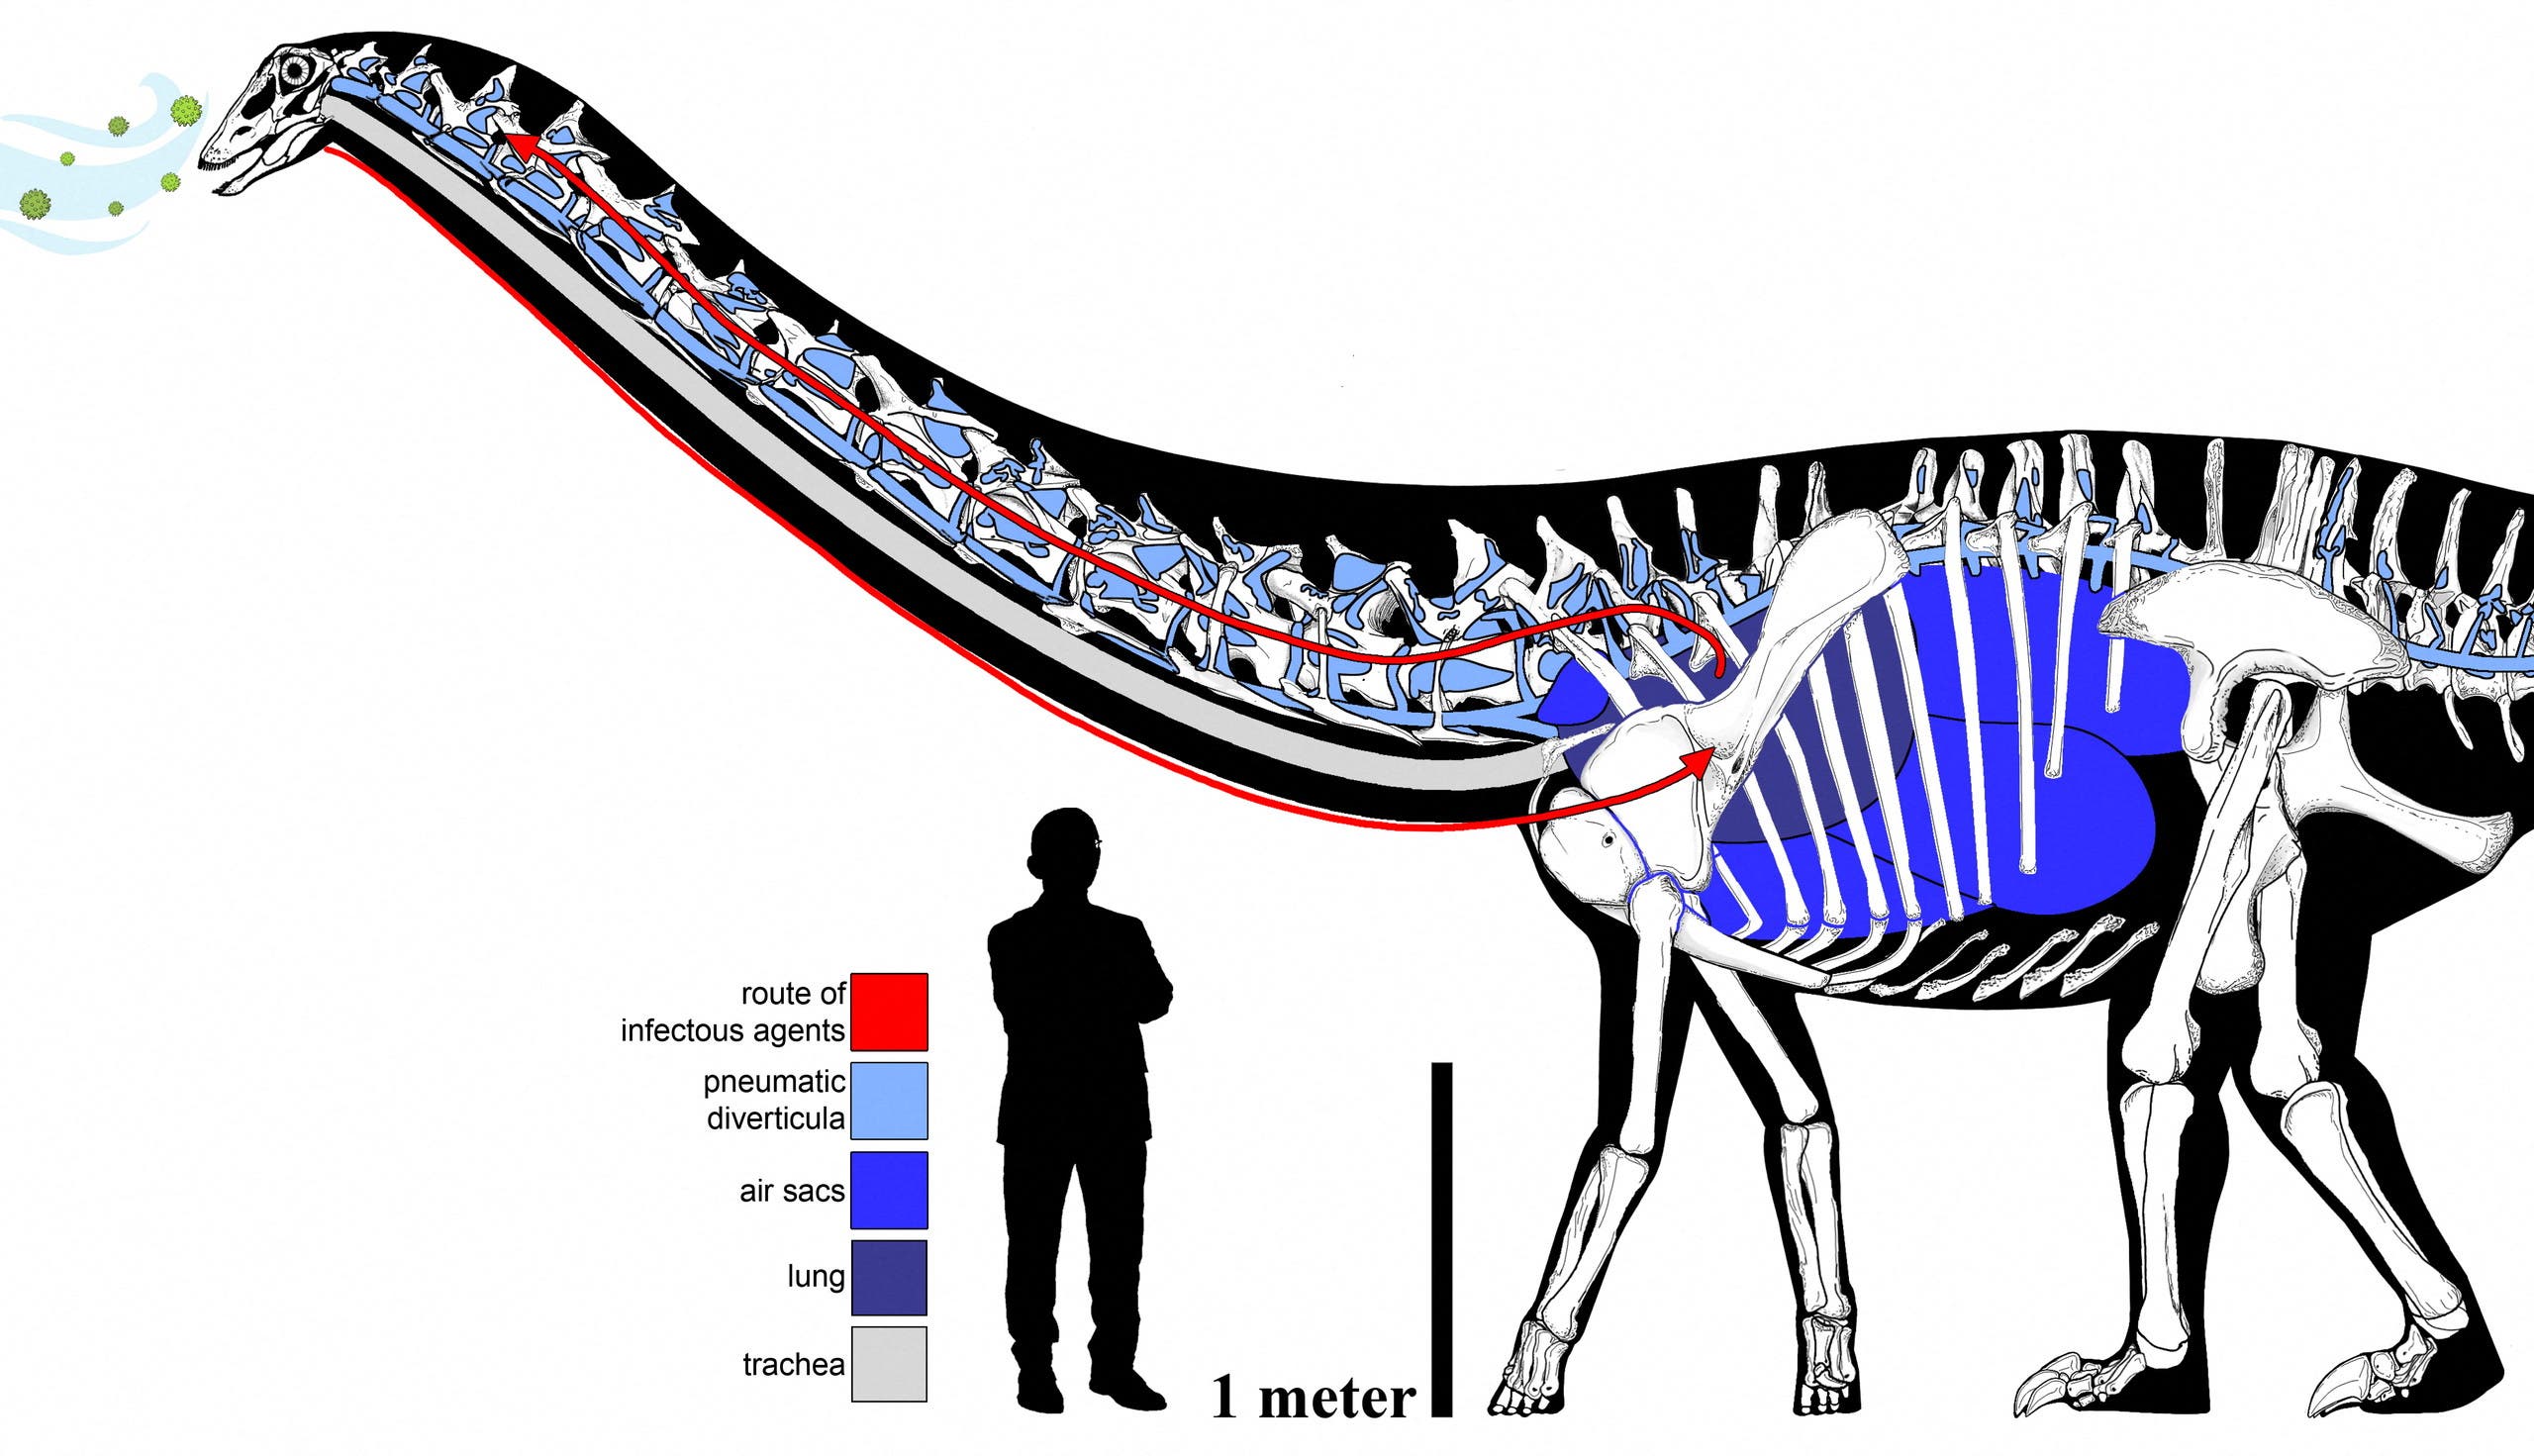 رسم يظهر الجهاز التنفسي المفترض للديناصور دوللي ويقارن طوله بطول البشر